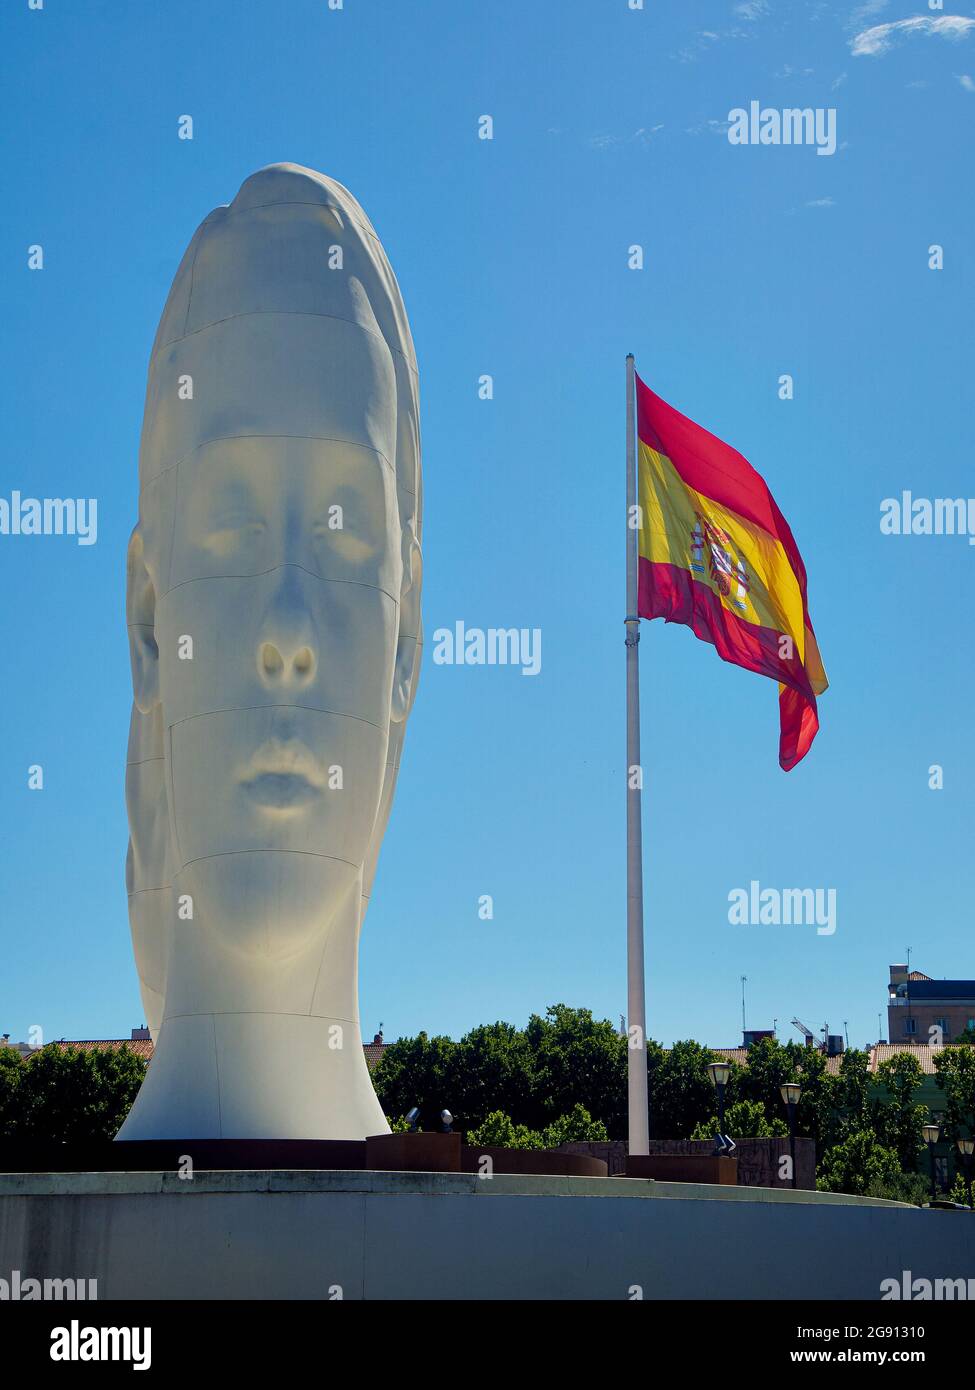 Madrid, Espagne - 12 juillet 2021. Julia, une sculpture de Jaume Plensa avec le drapeau espagnol en arrière-plan. Place Plaza de Colon. Madrid, Espagne. Banque D'Images